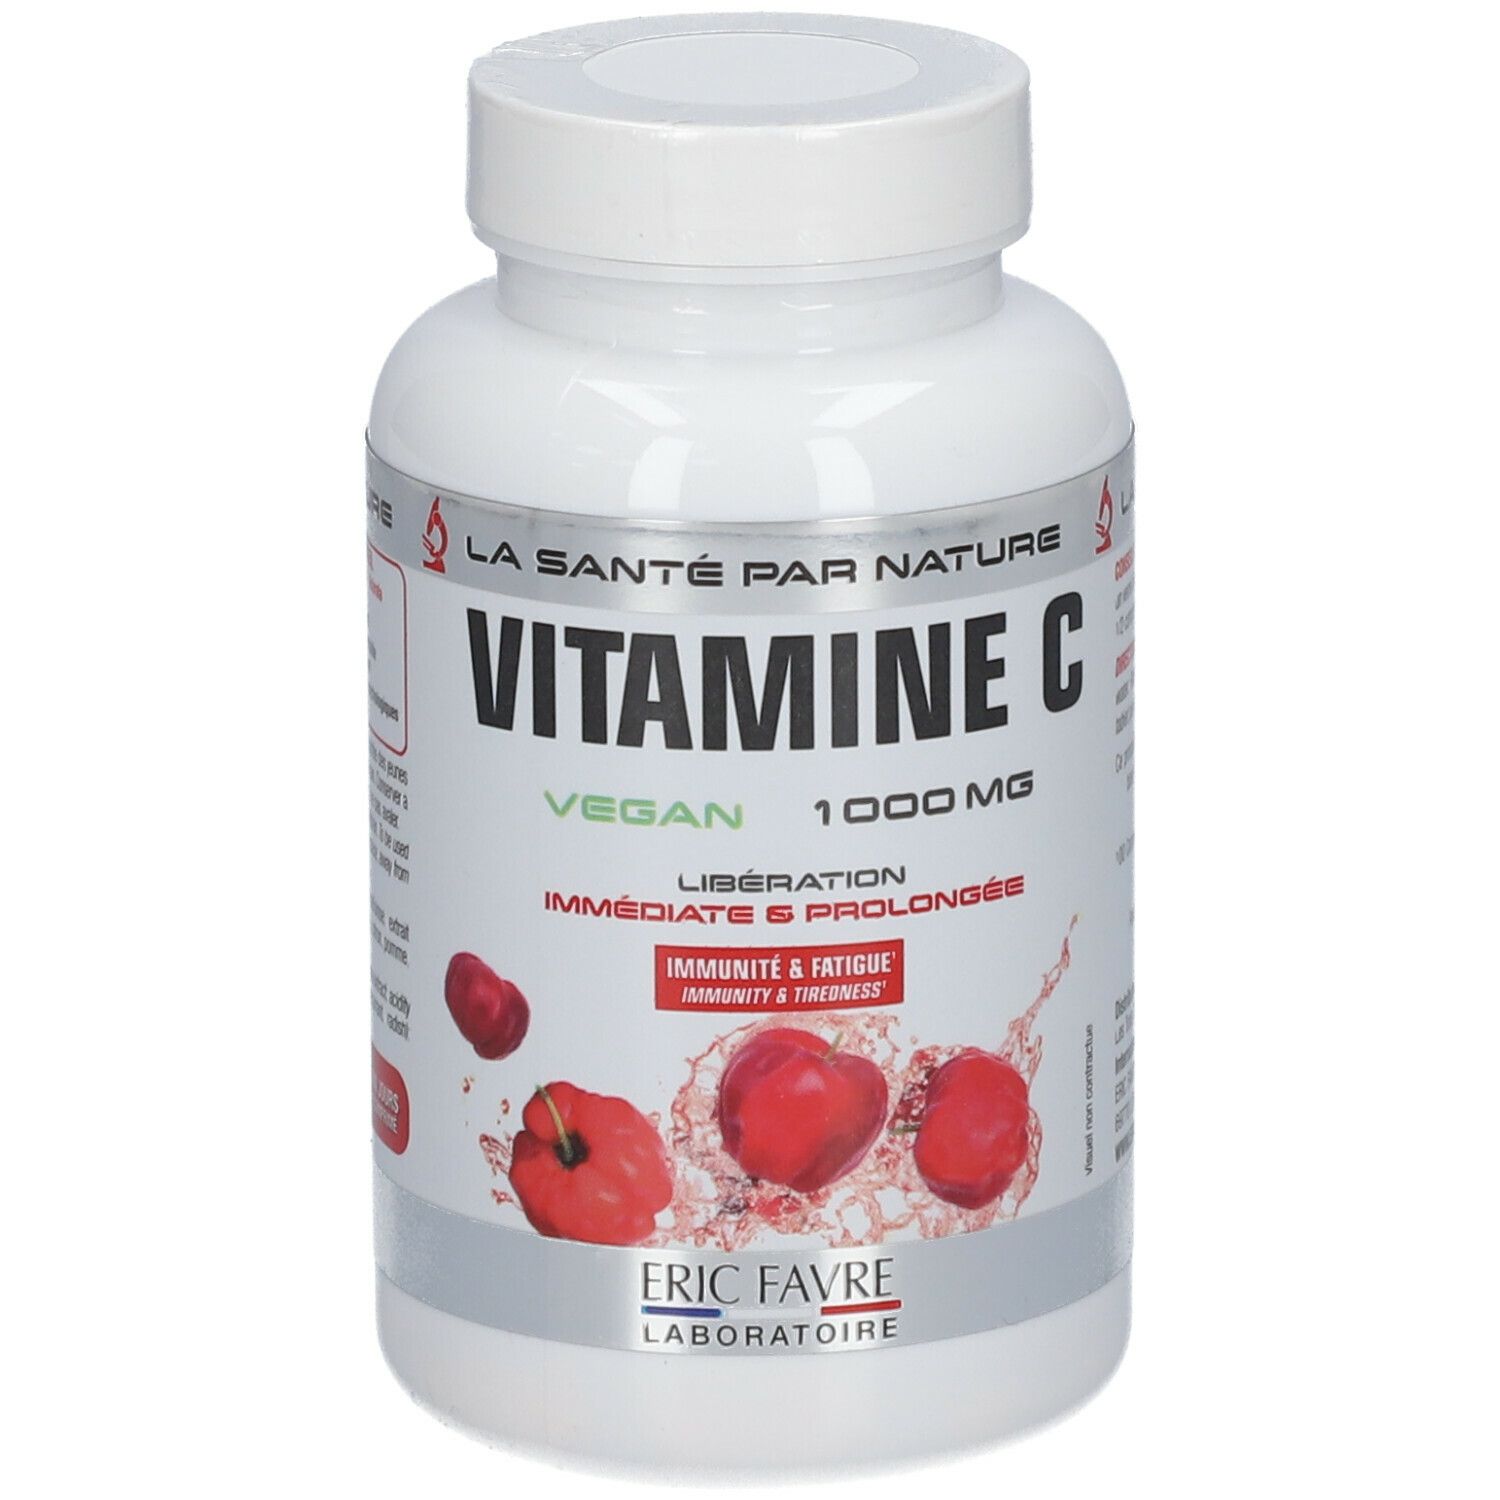 Eric Favre® Vitamine C Vegan